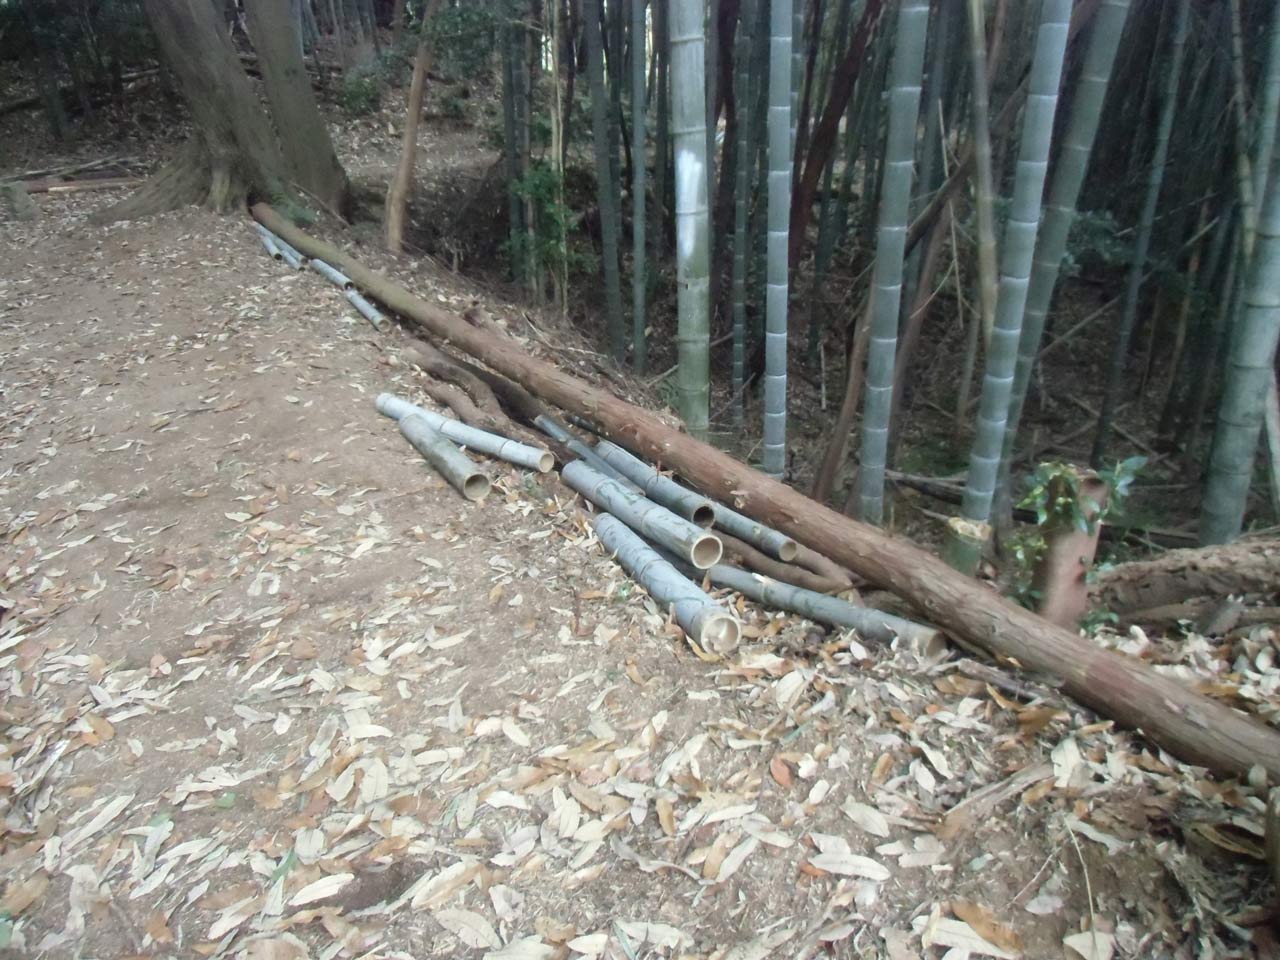 遺跡保護の観点から土留め木材を固定するくい打ちができないため、土橋両側の立ち木や孟宗竹の根元に木材をかけて固定した